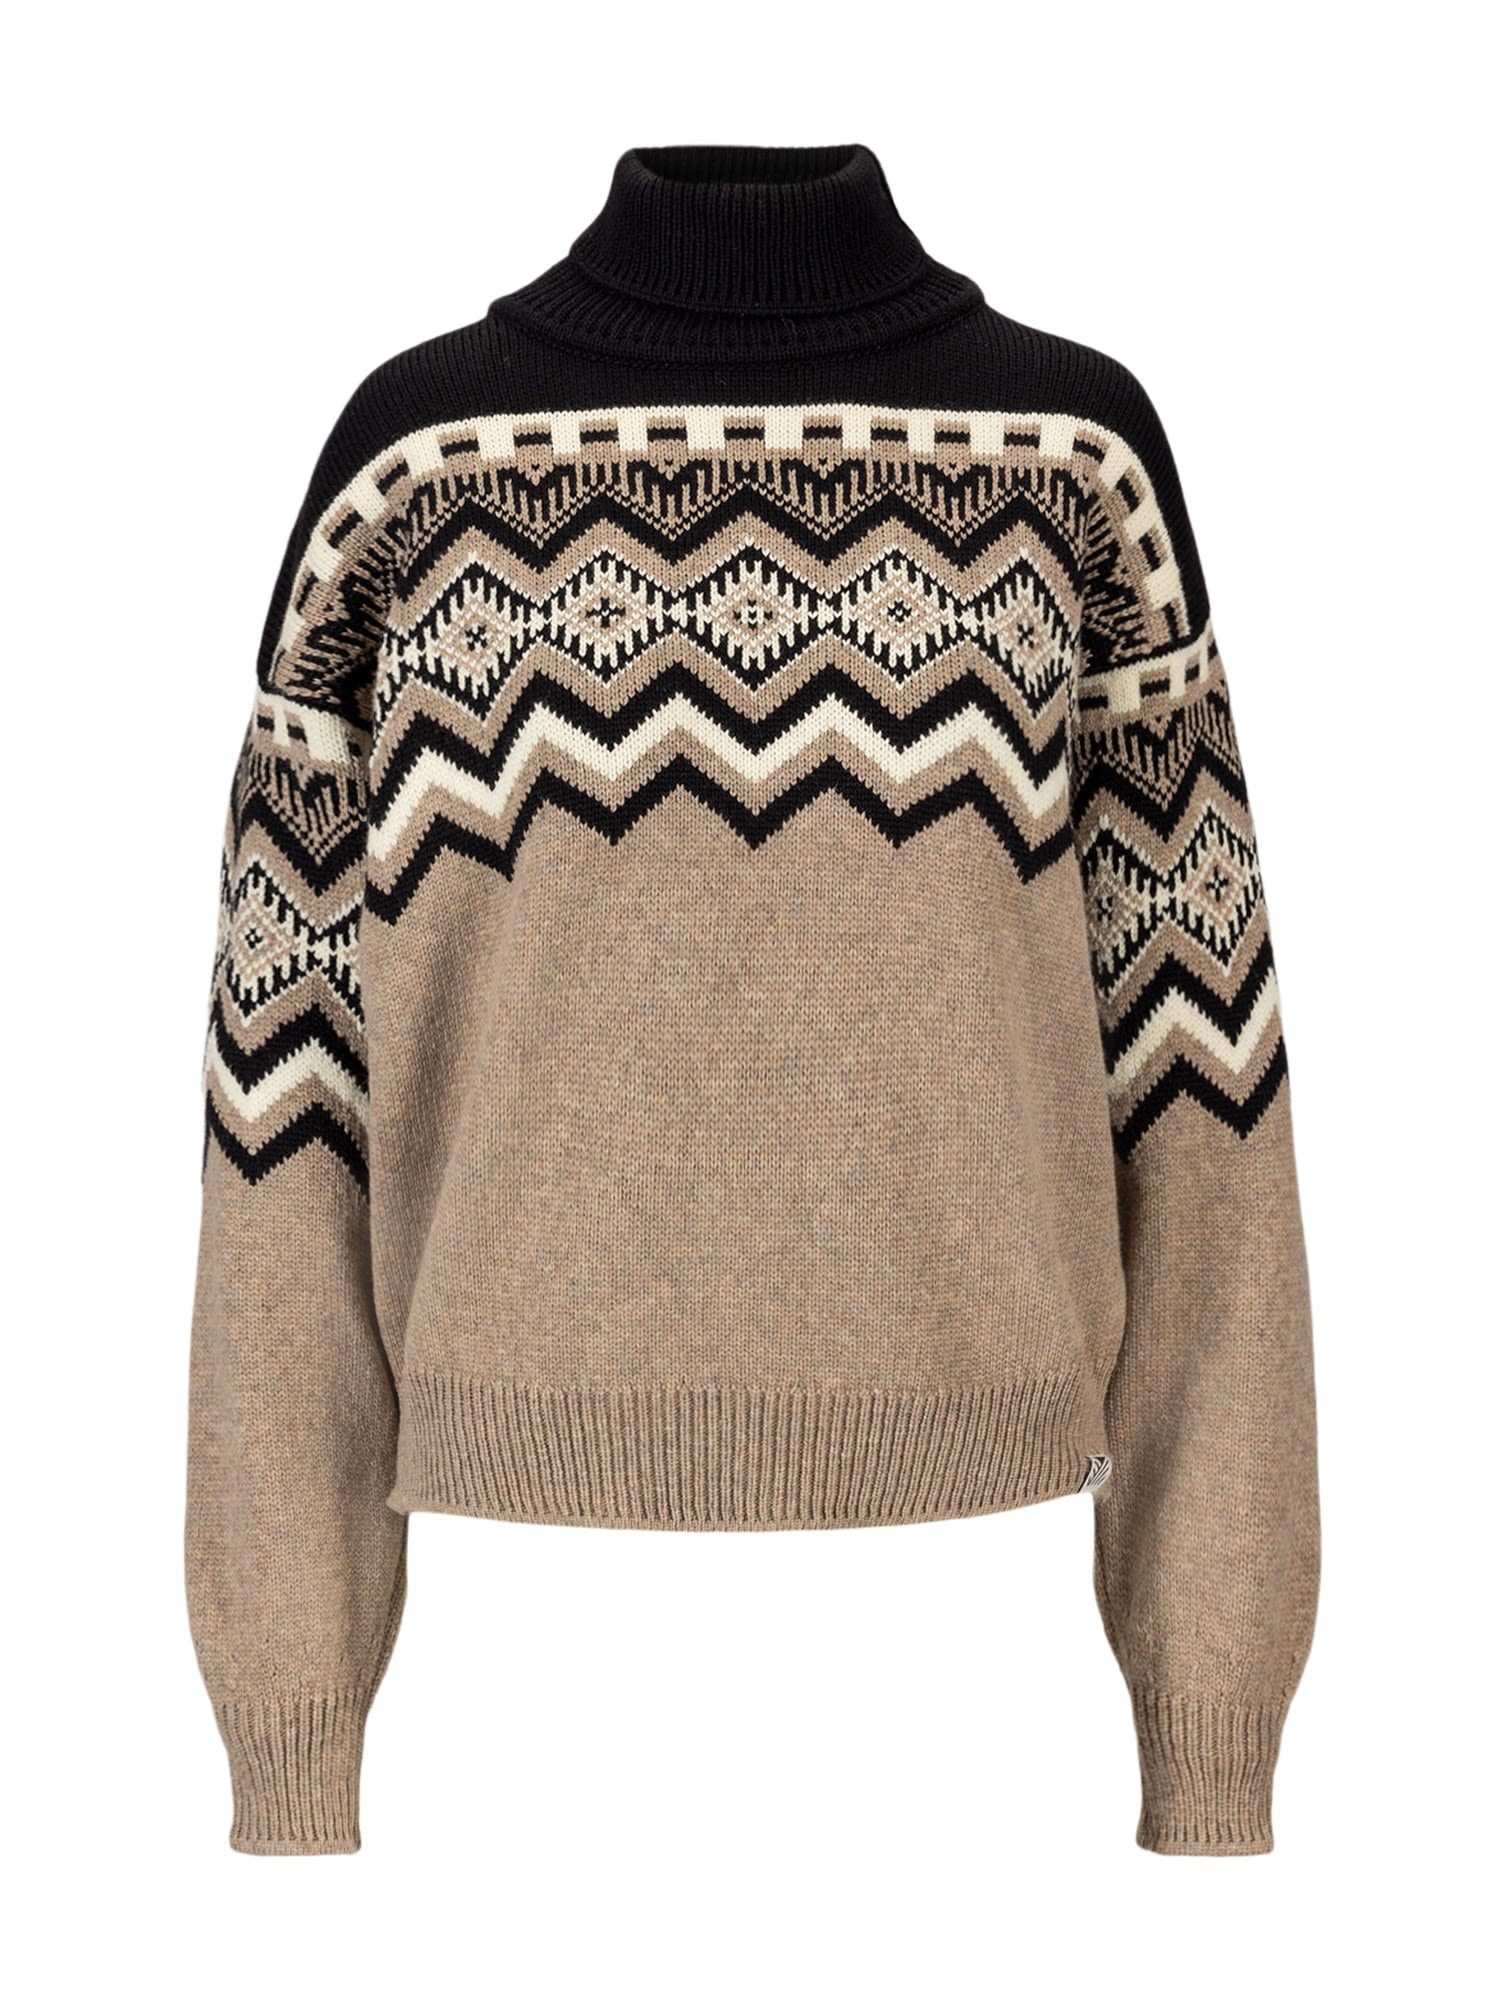 Damen Dale Norway Offwhite Black Of Norway Randaberg W Brown - of Dale - Fleecepullover Sweater Sweater Melange